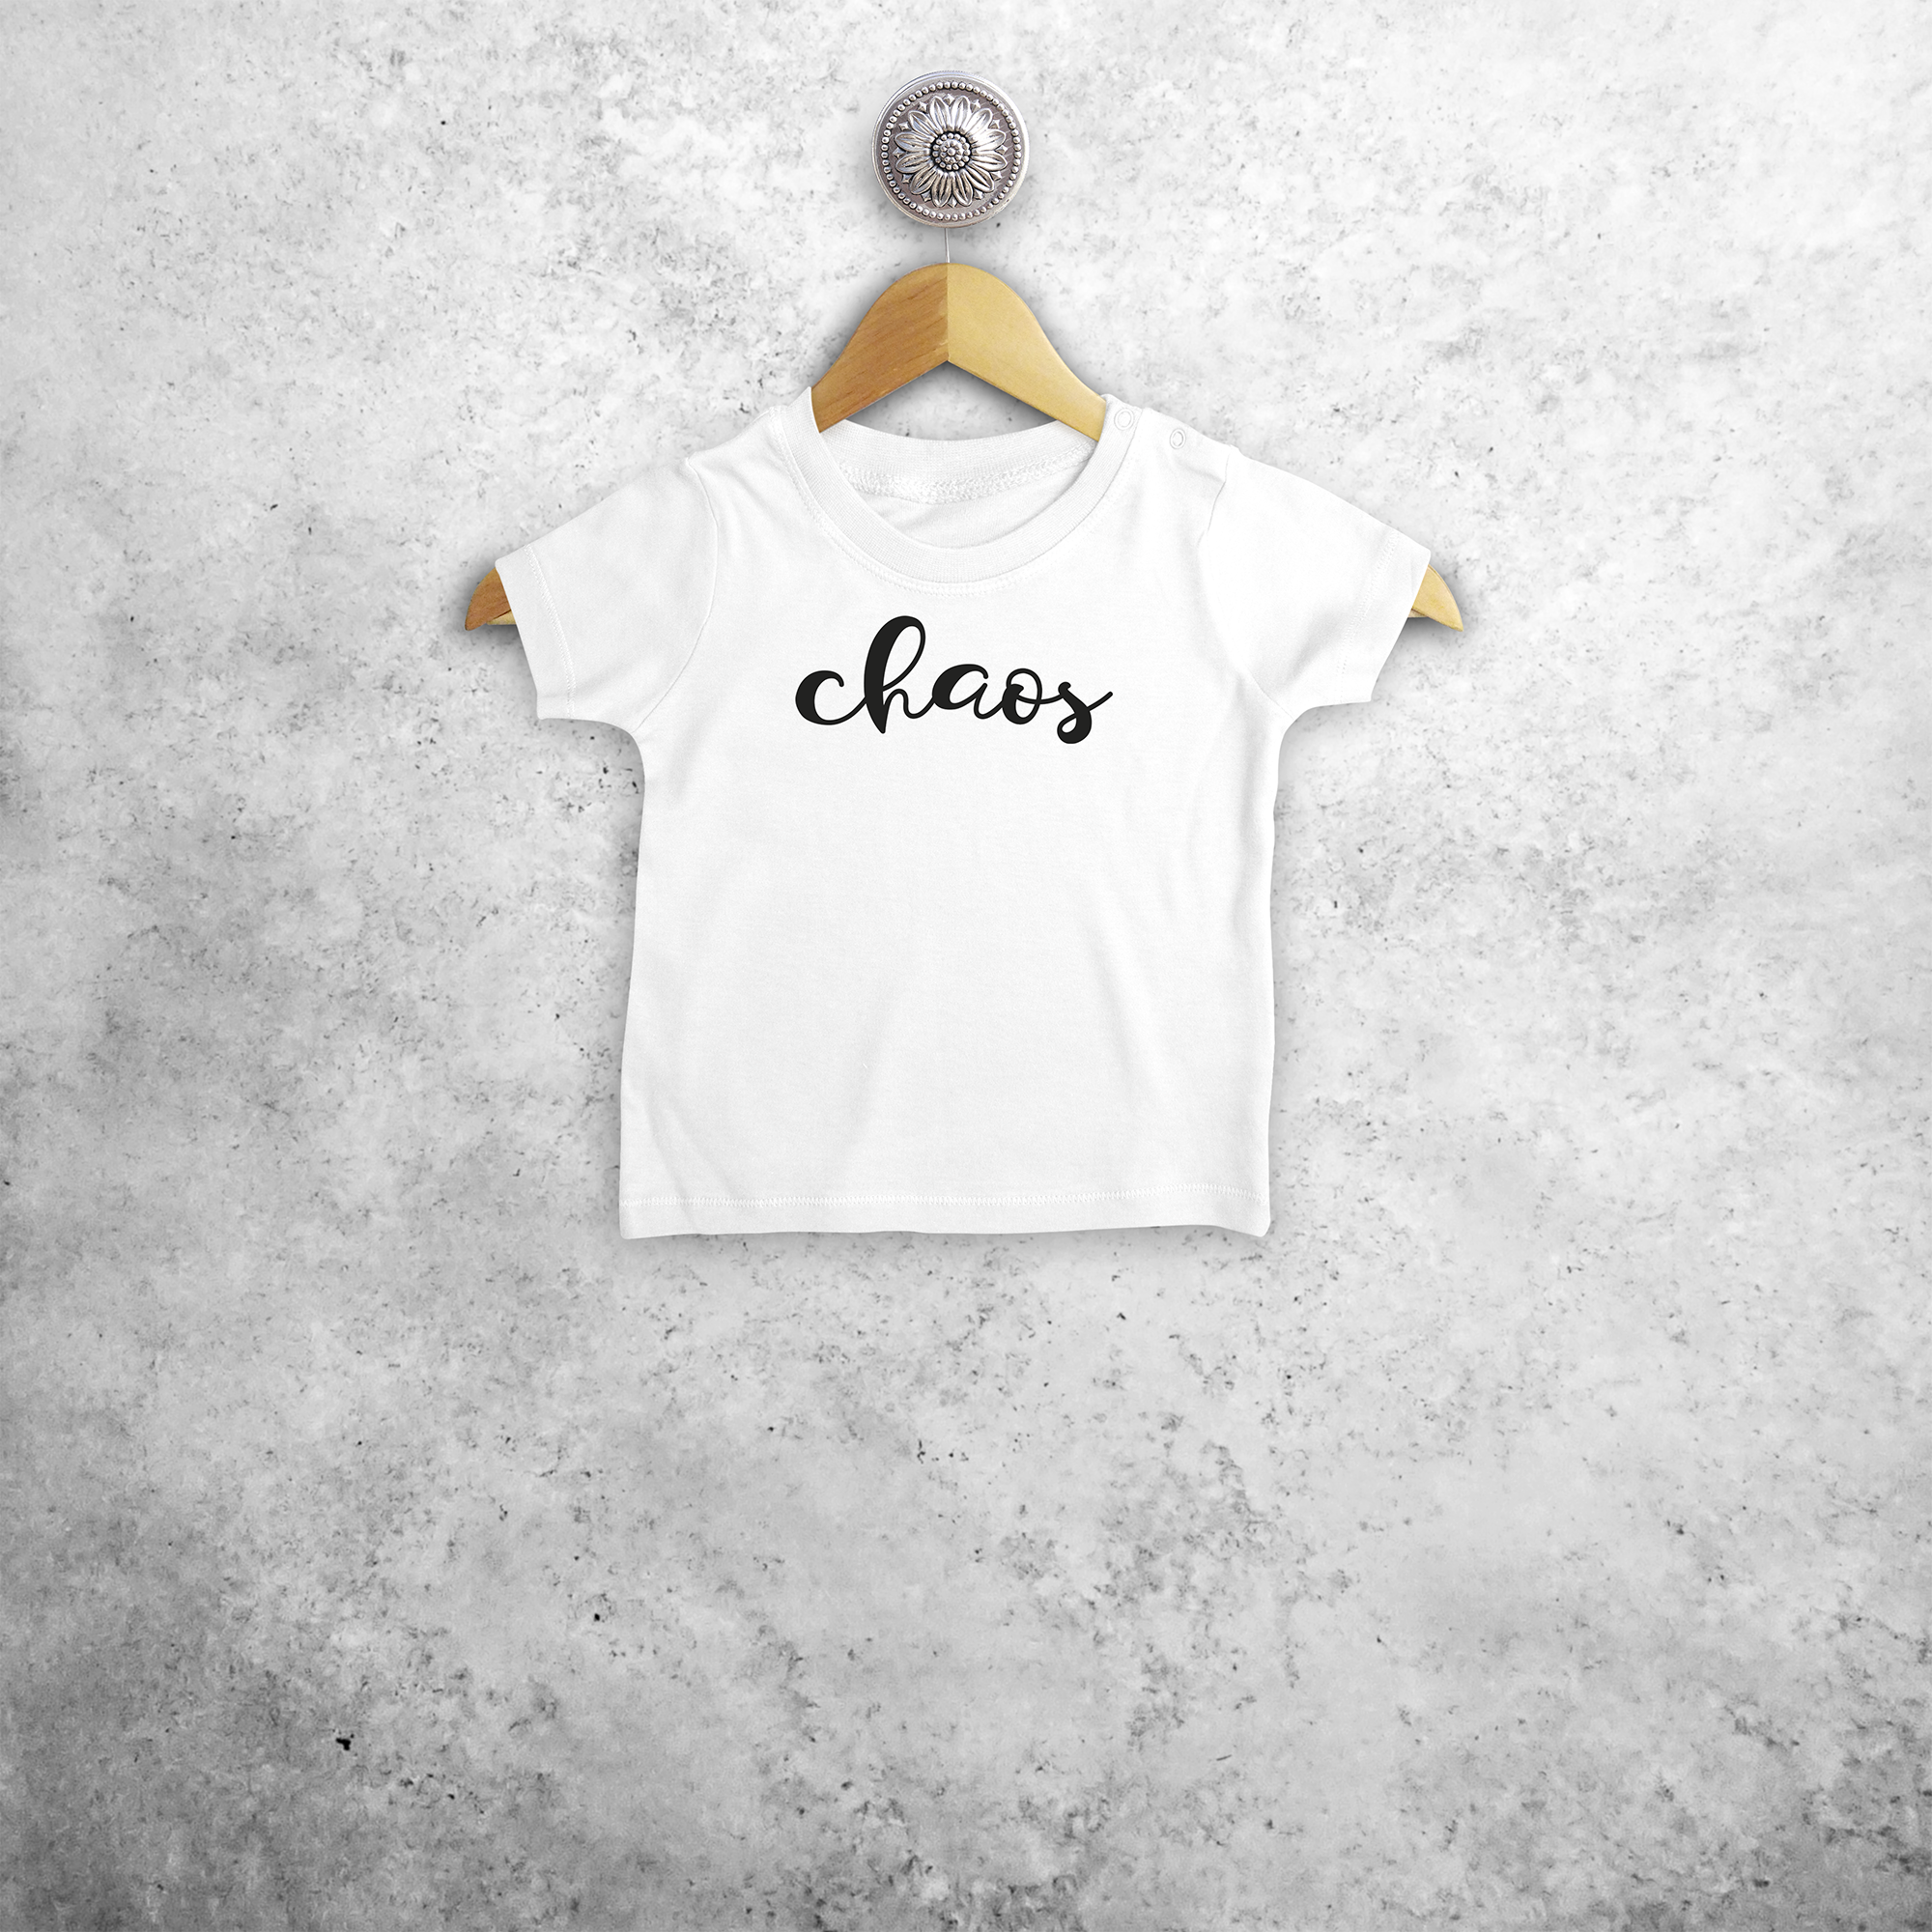 'Chaos' baby shortsleeve shirt